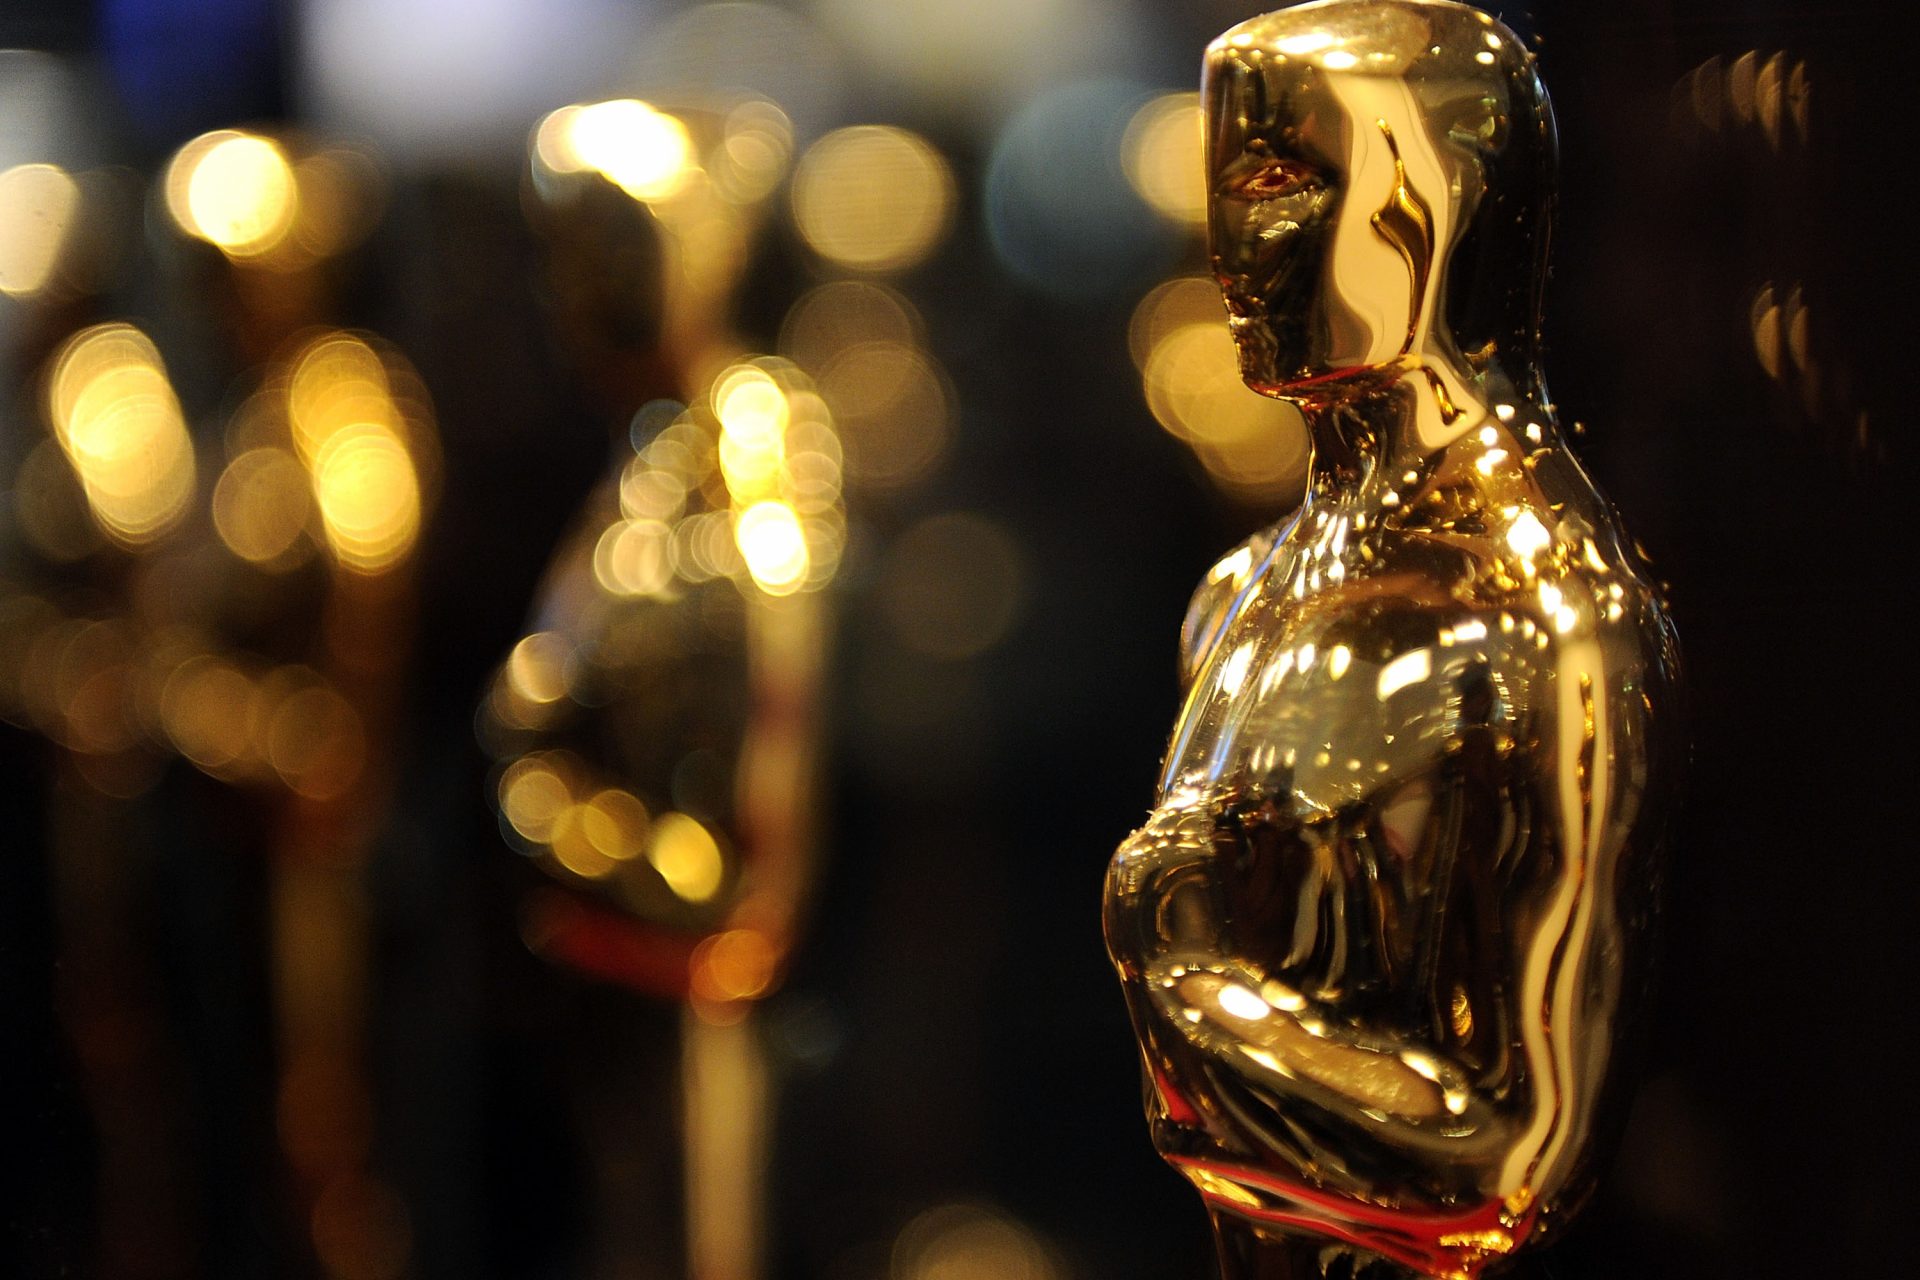 Wie is het vaakst genomineerd voor een Oscar?